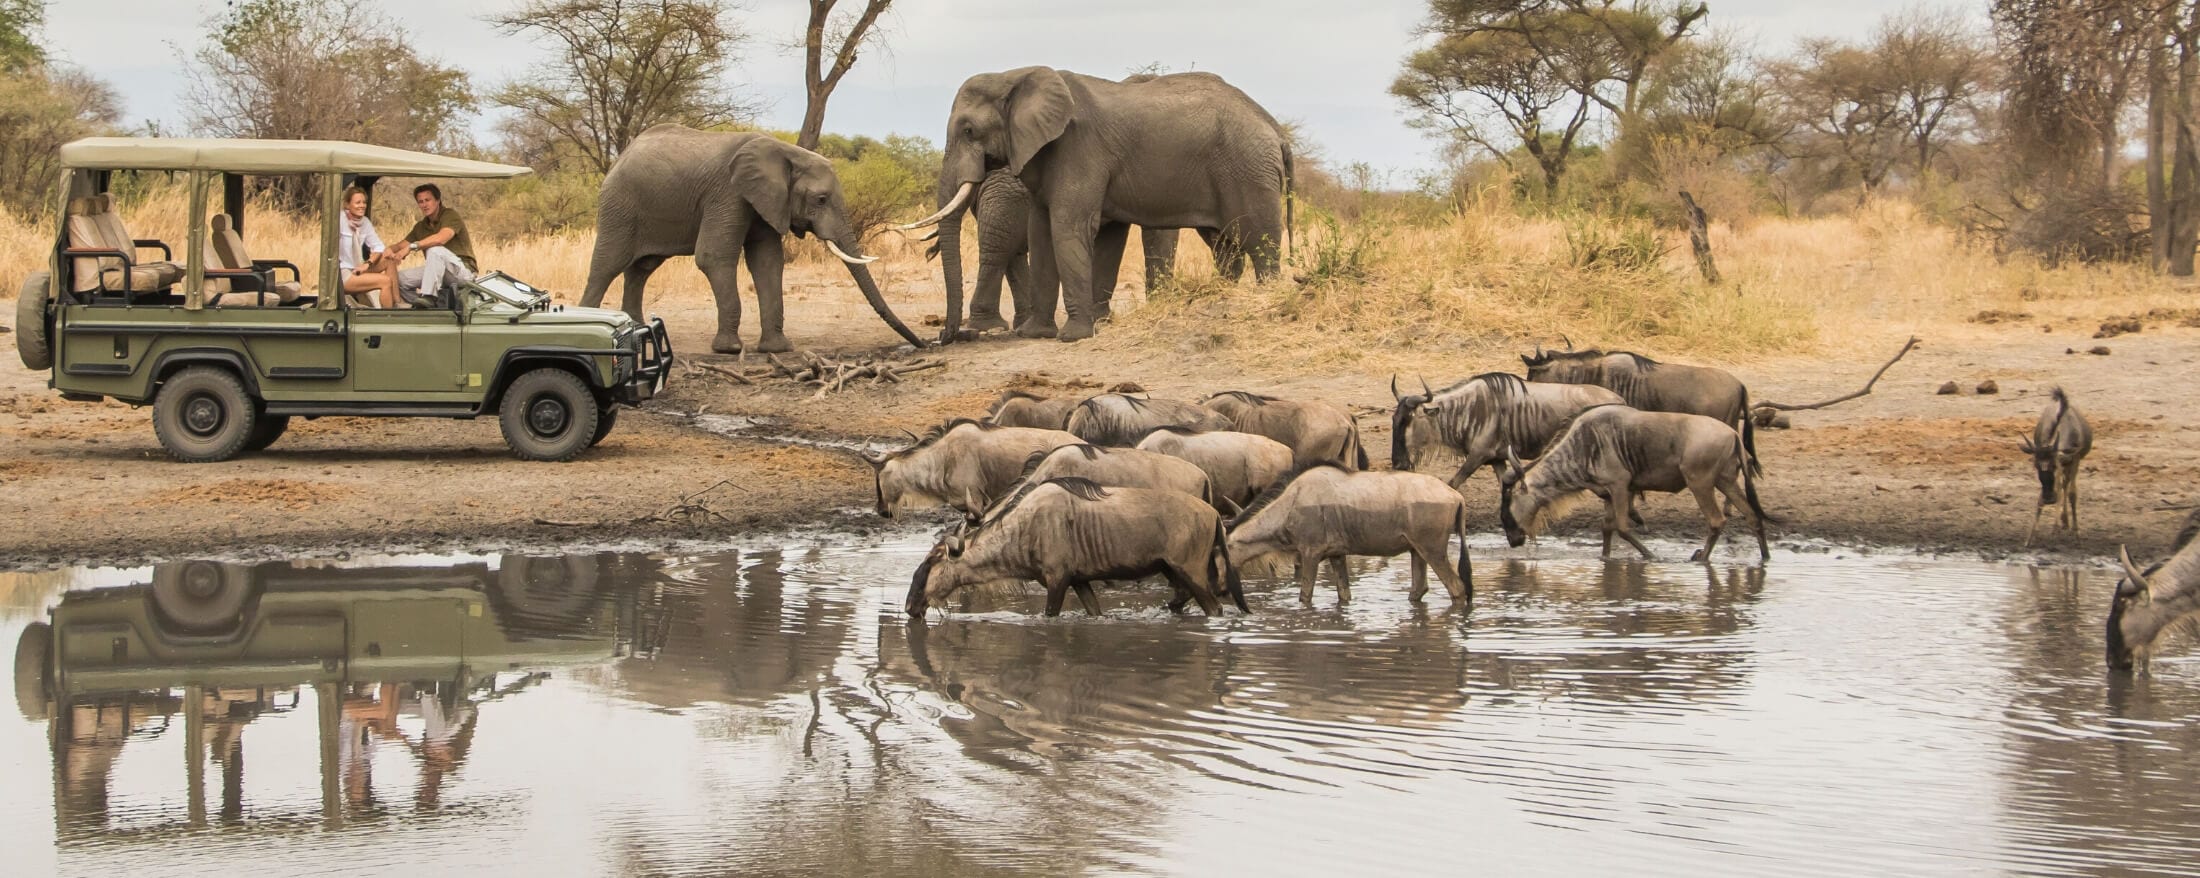 Rwanda Safaris, Africa